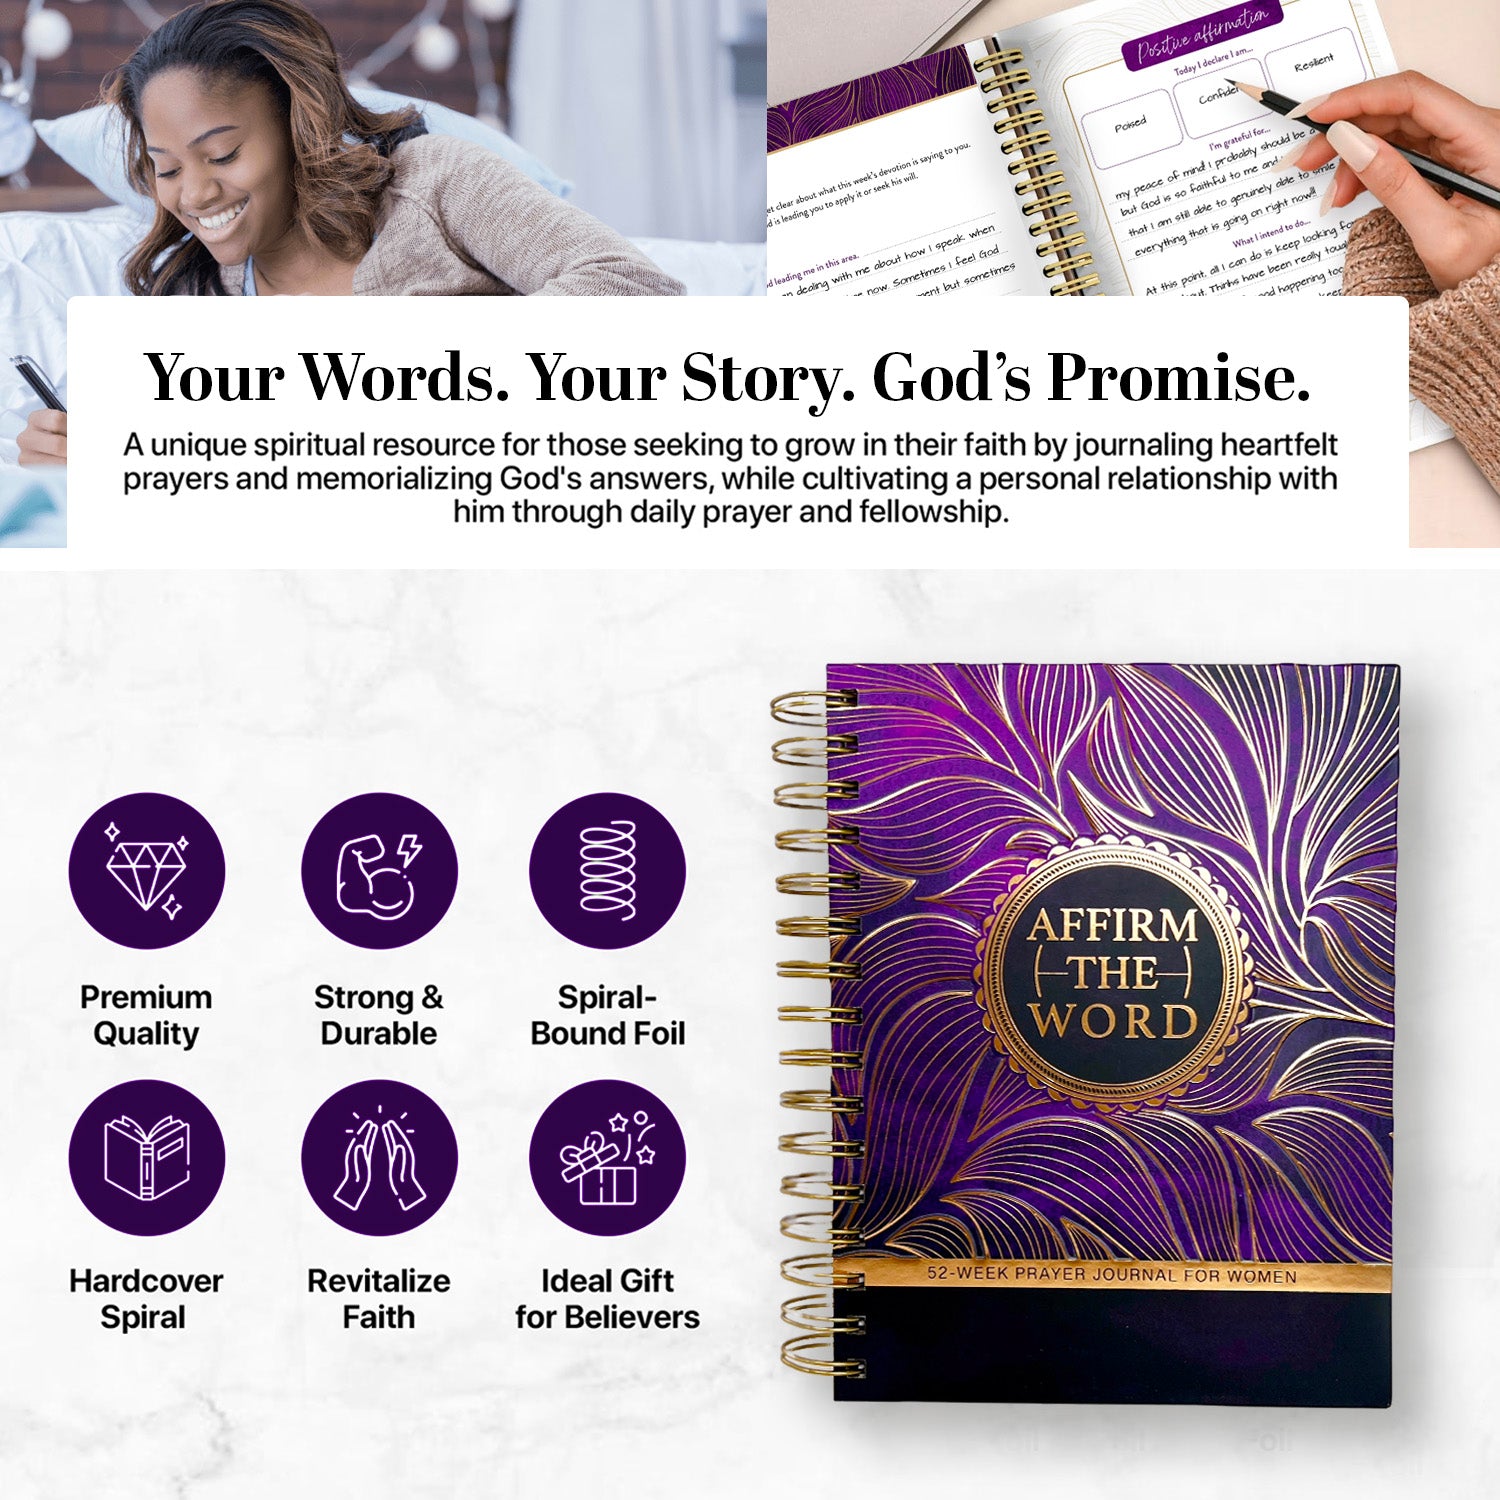 52 week Prayer Journal for Women & Anointing Oil